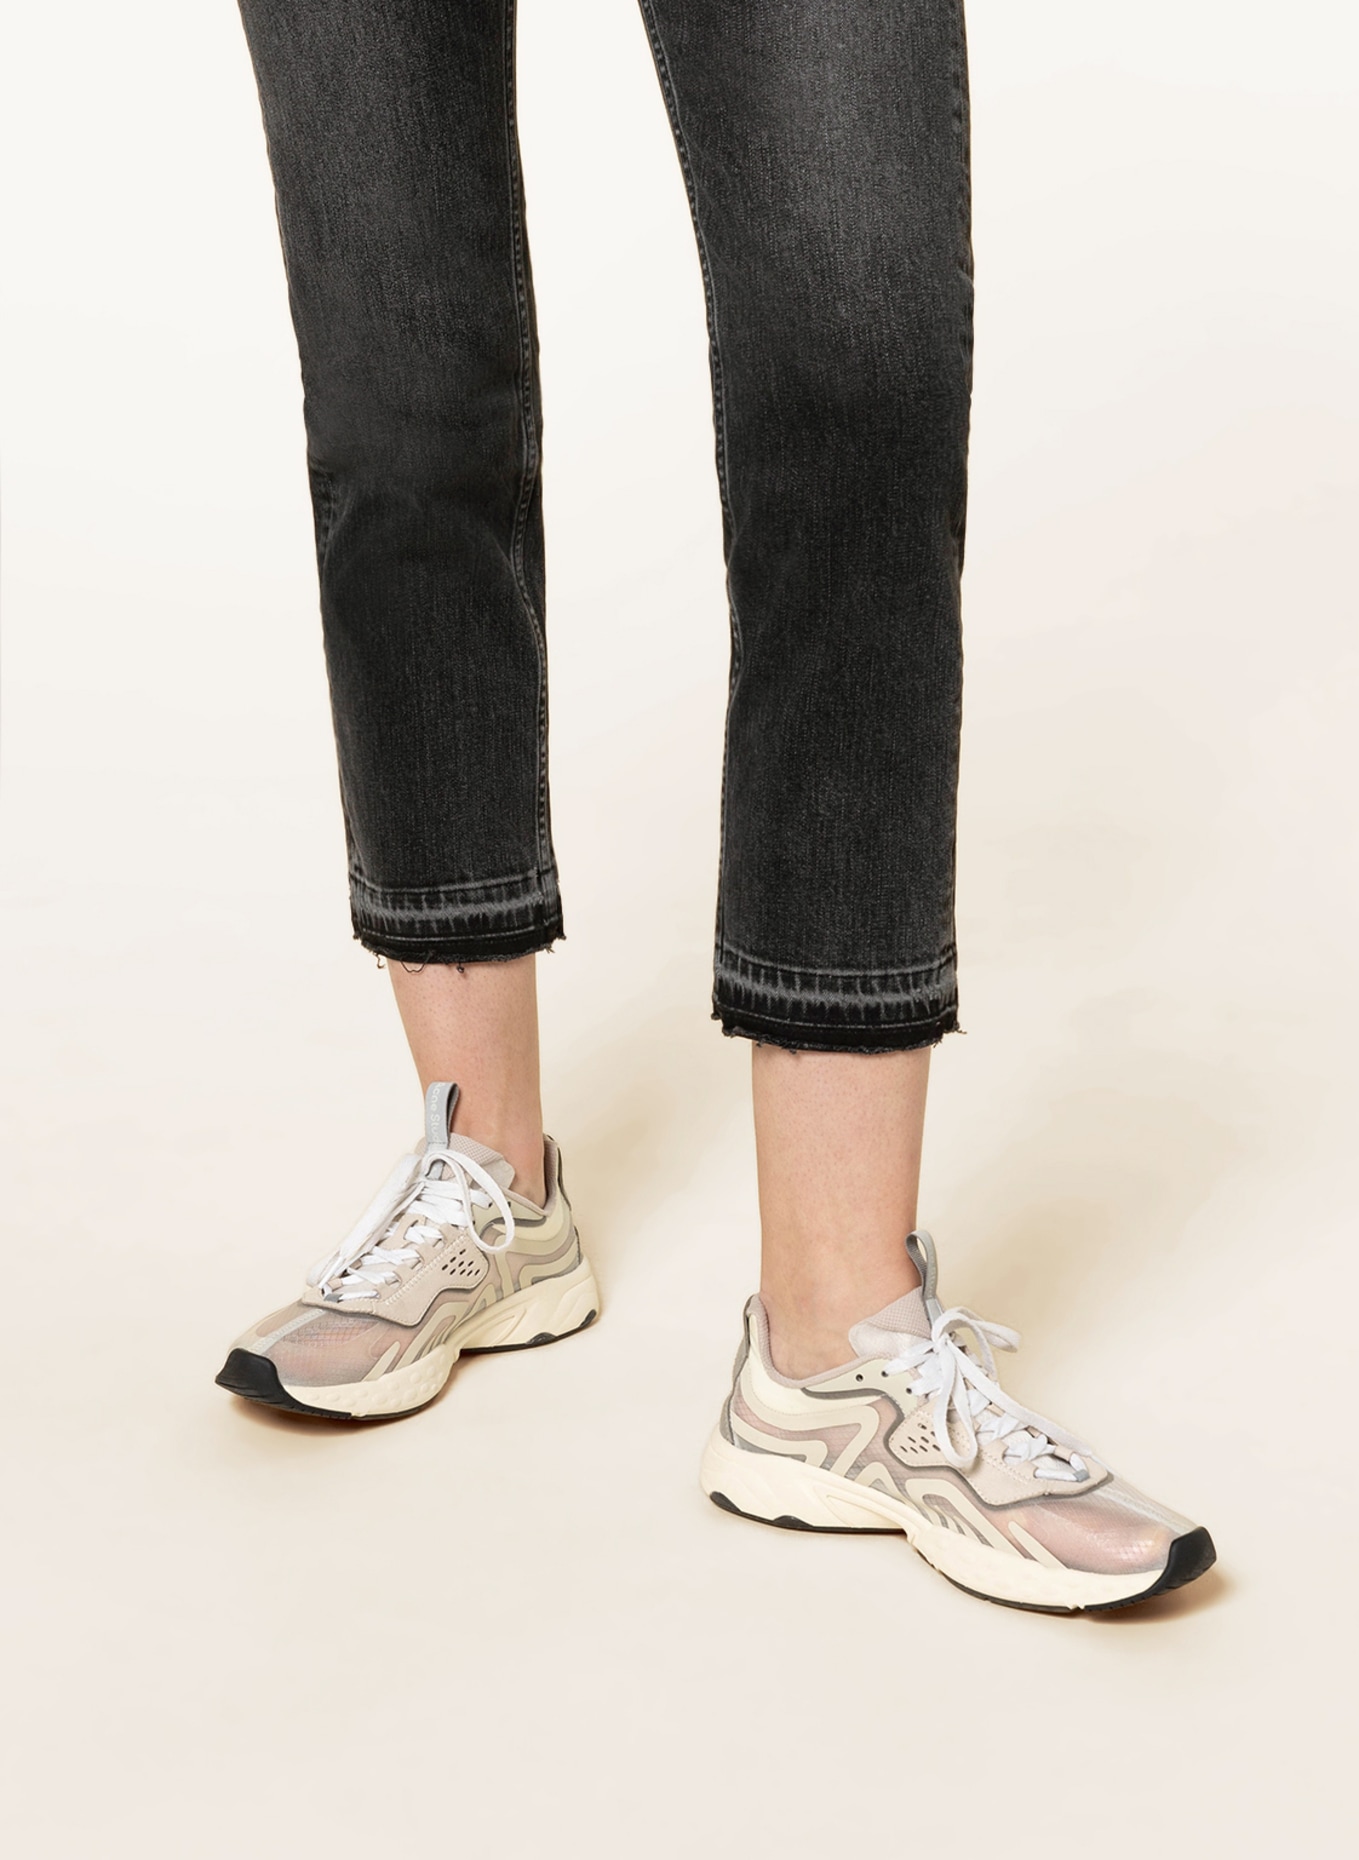 AG Jeans 7/8 jeans GIRLFRIEND, Color: BLK5 BLK5 (Image 5)